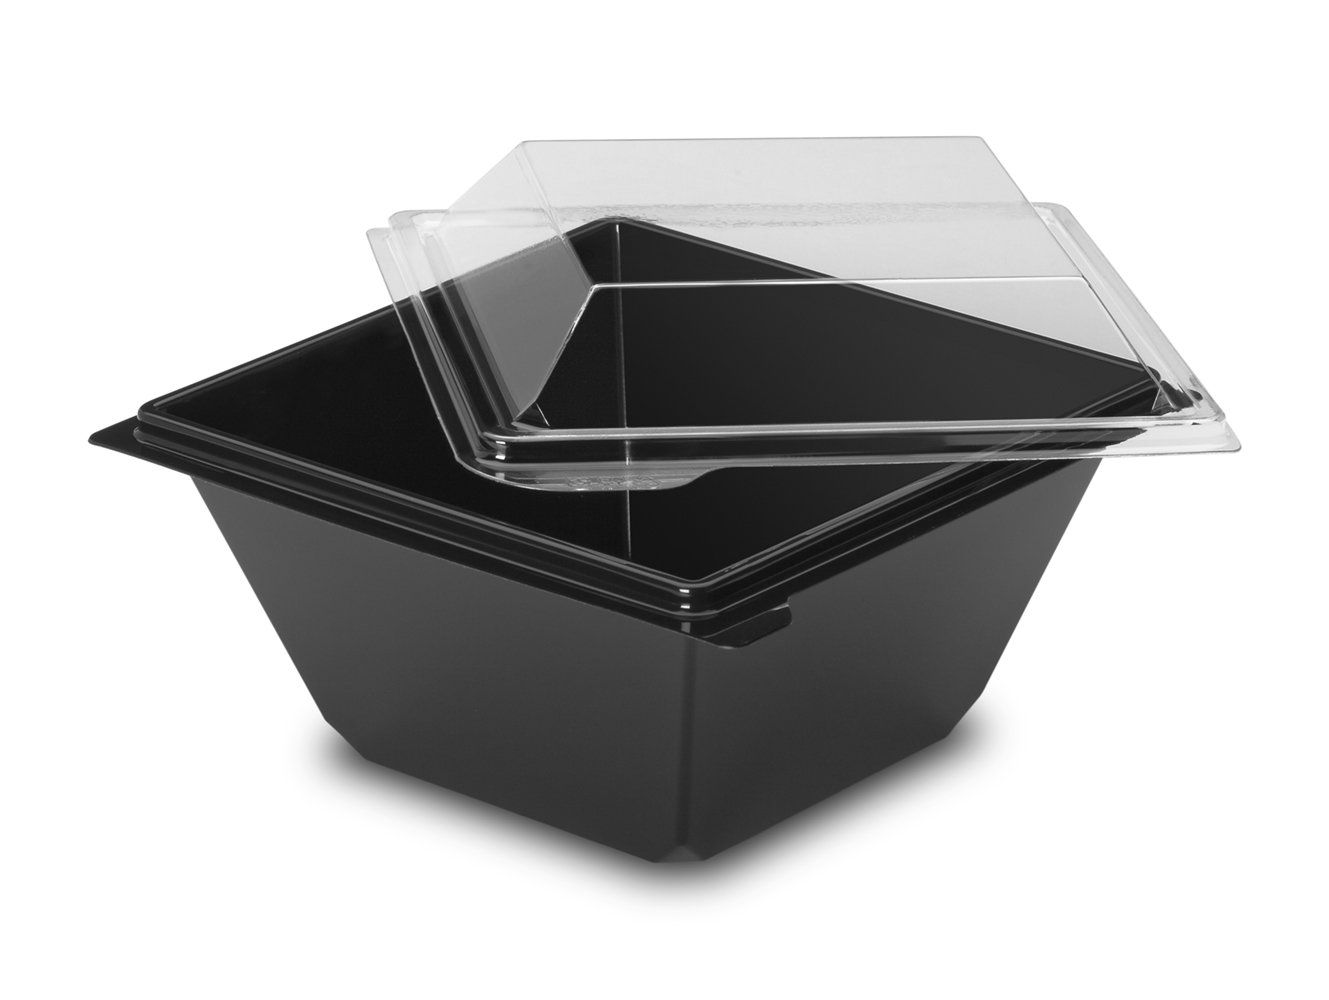 GUILLIN carpot371pn Karton Topf Salat Deckel Boden unabhängigen, Kunststoff, schwarz, 11,4 x 11,4 x 5,5 cm